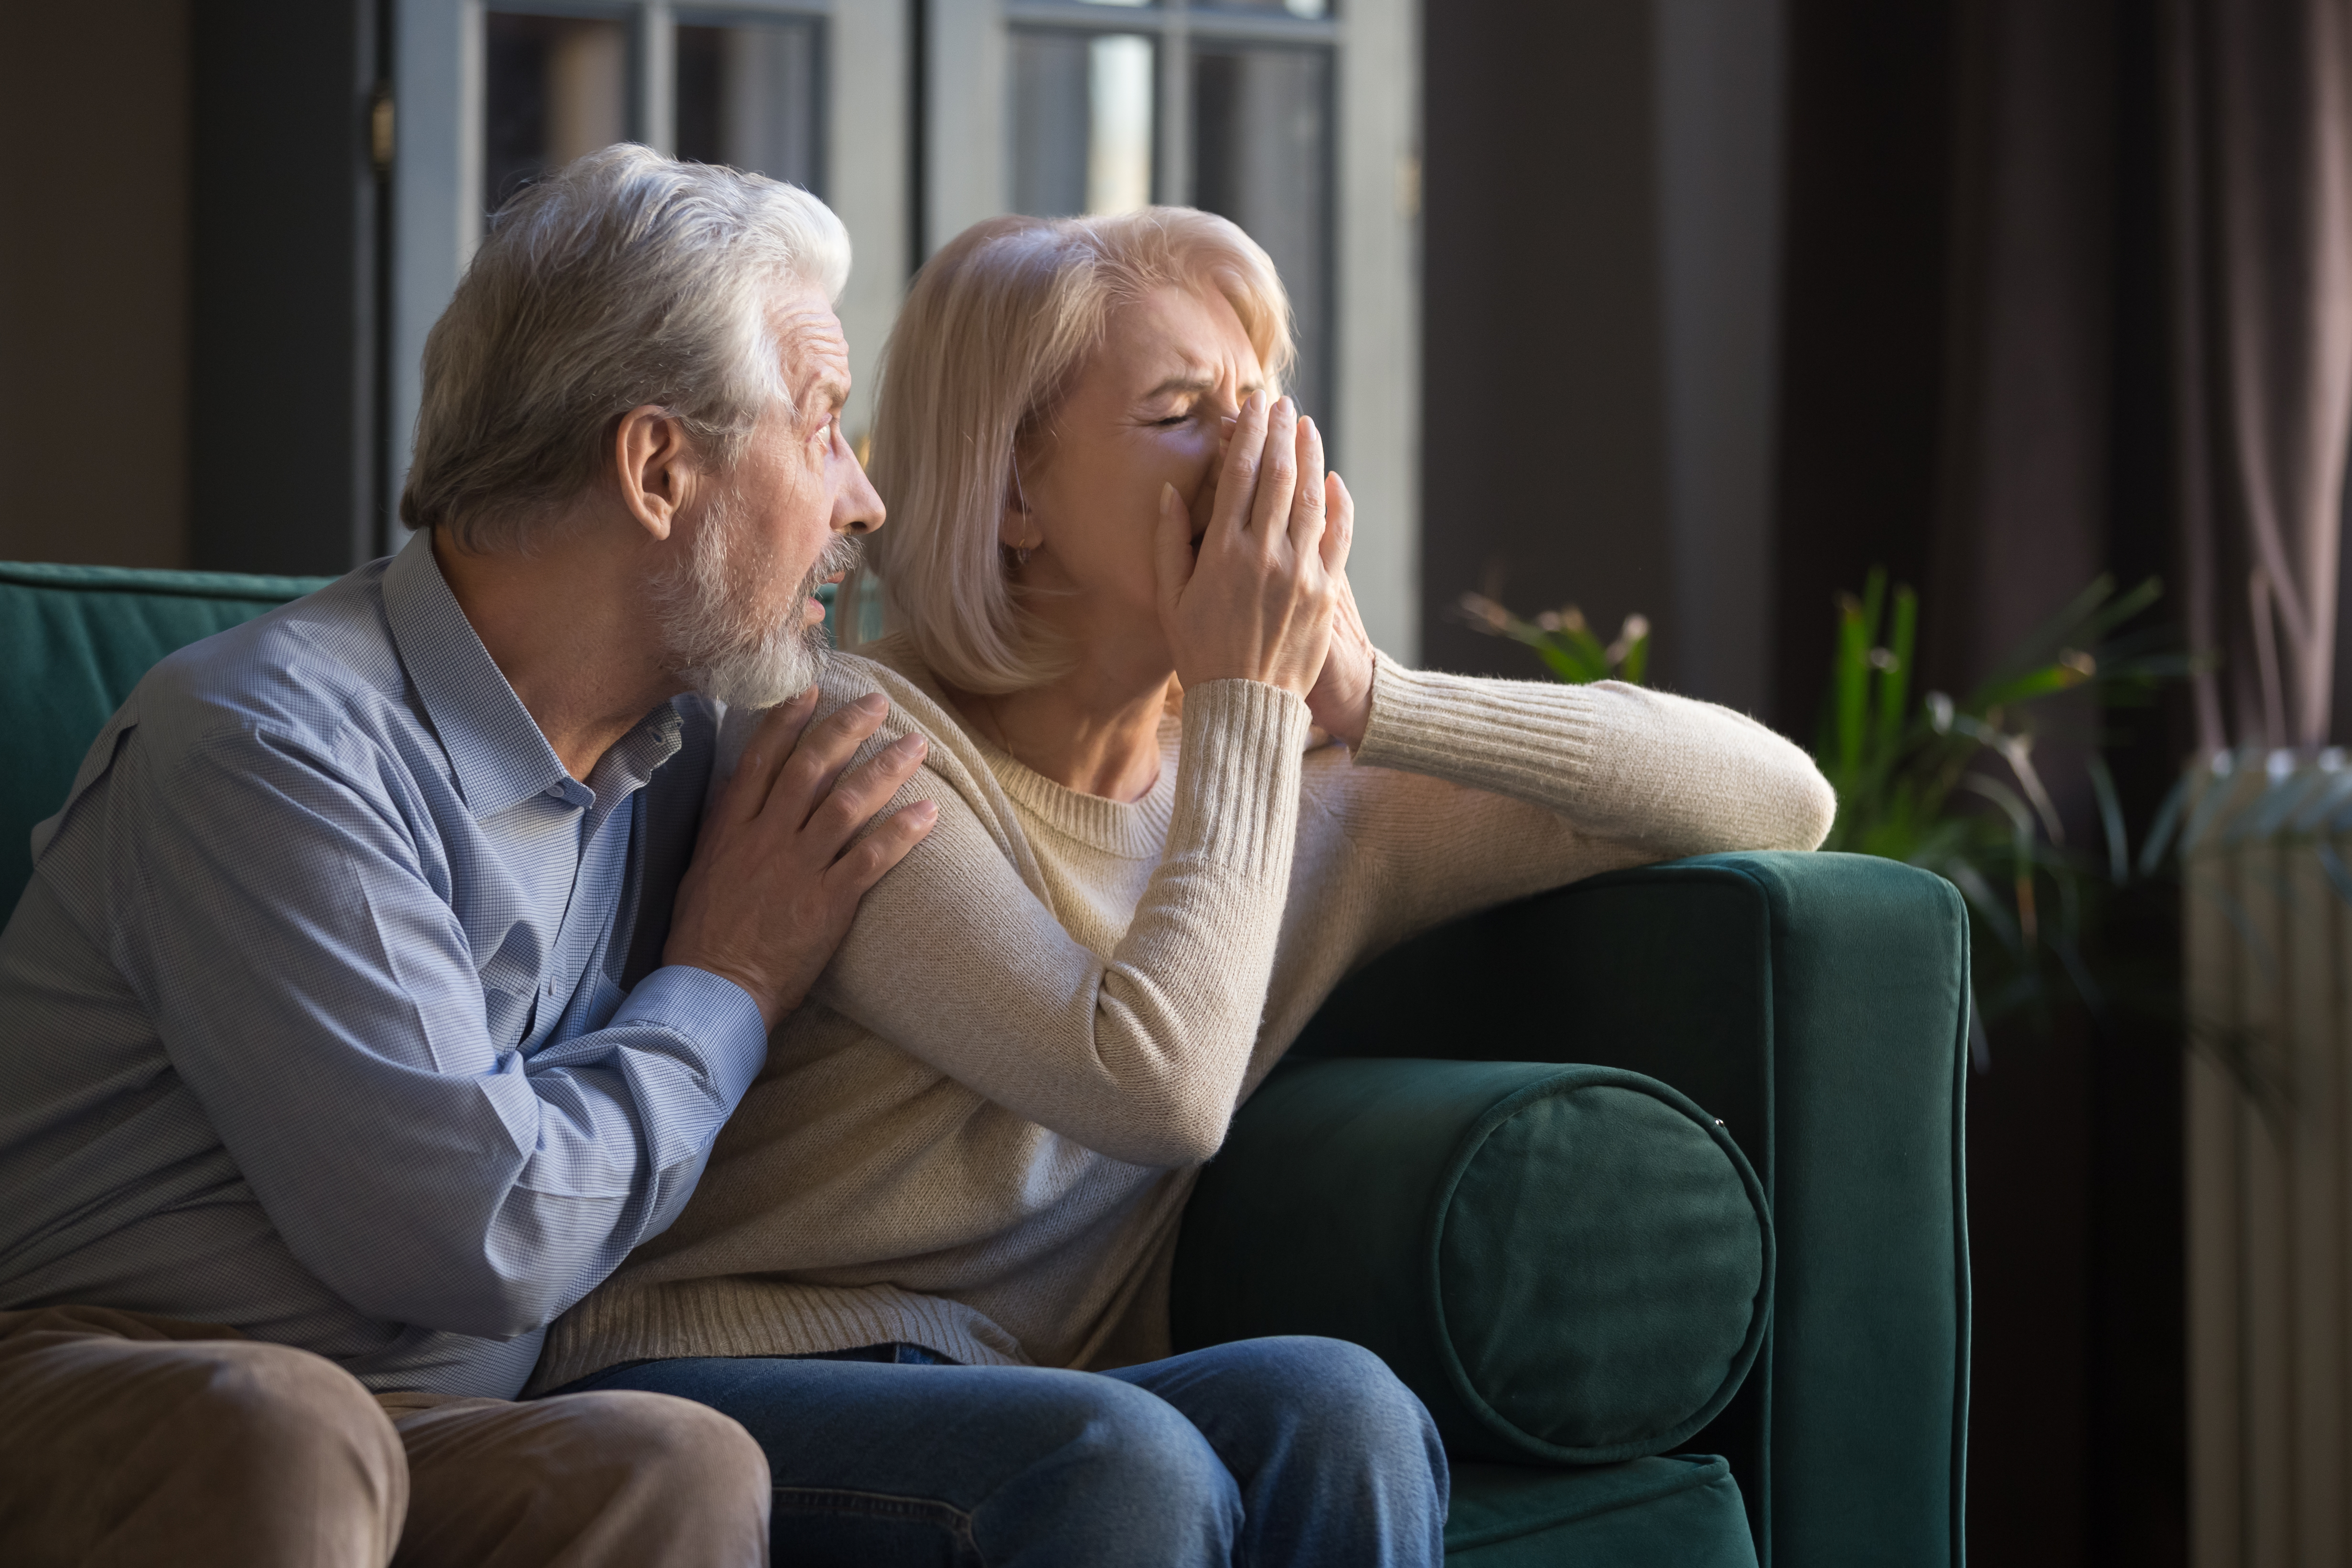 Eine Frau weint, während ihr Mann sie tröstet. | Quelle: Shutterstock